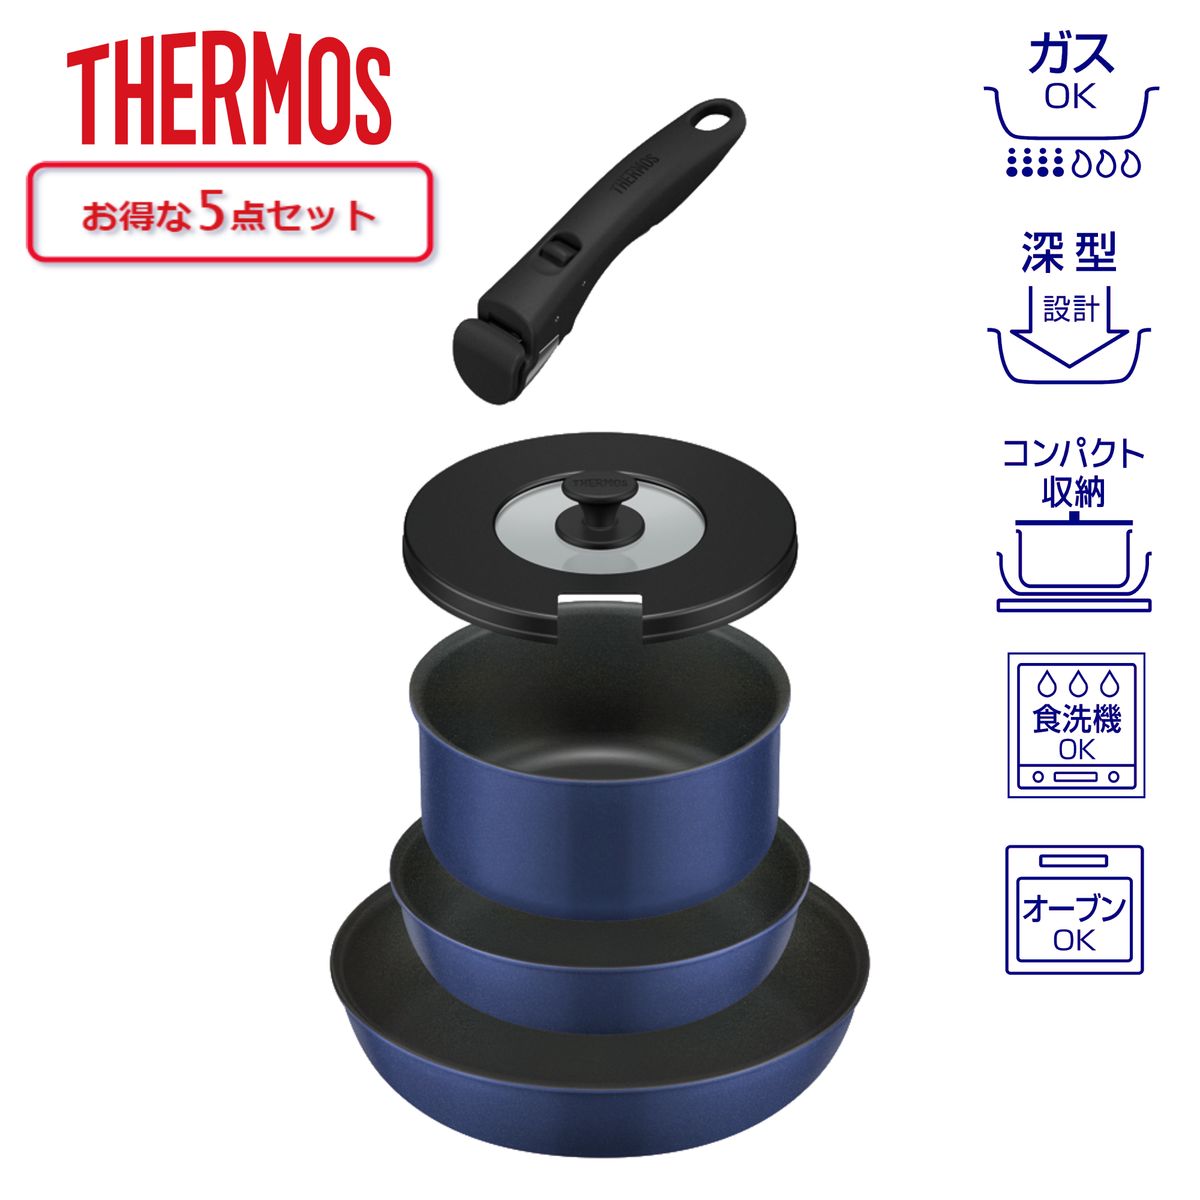 THERMOS 取っ手のとれるフライパン5点セット 蓋 付 着脱式取っ手 アイボリー ガス火専用 食洗器対応